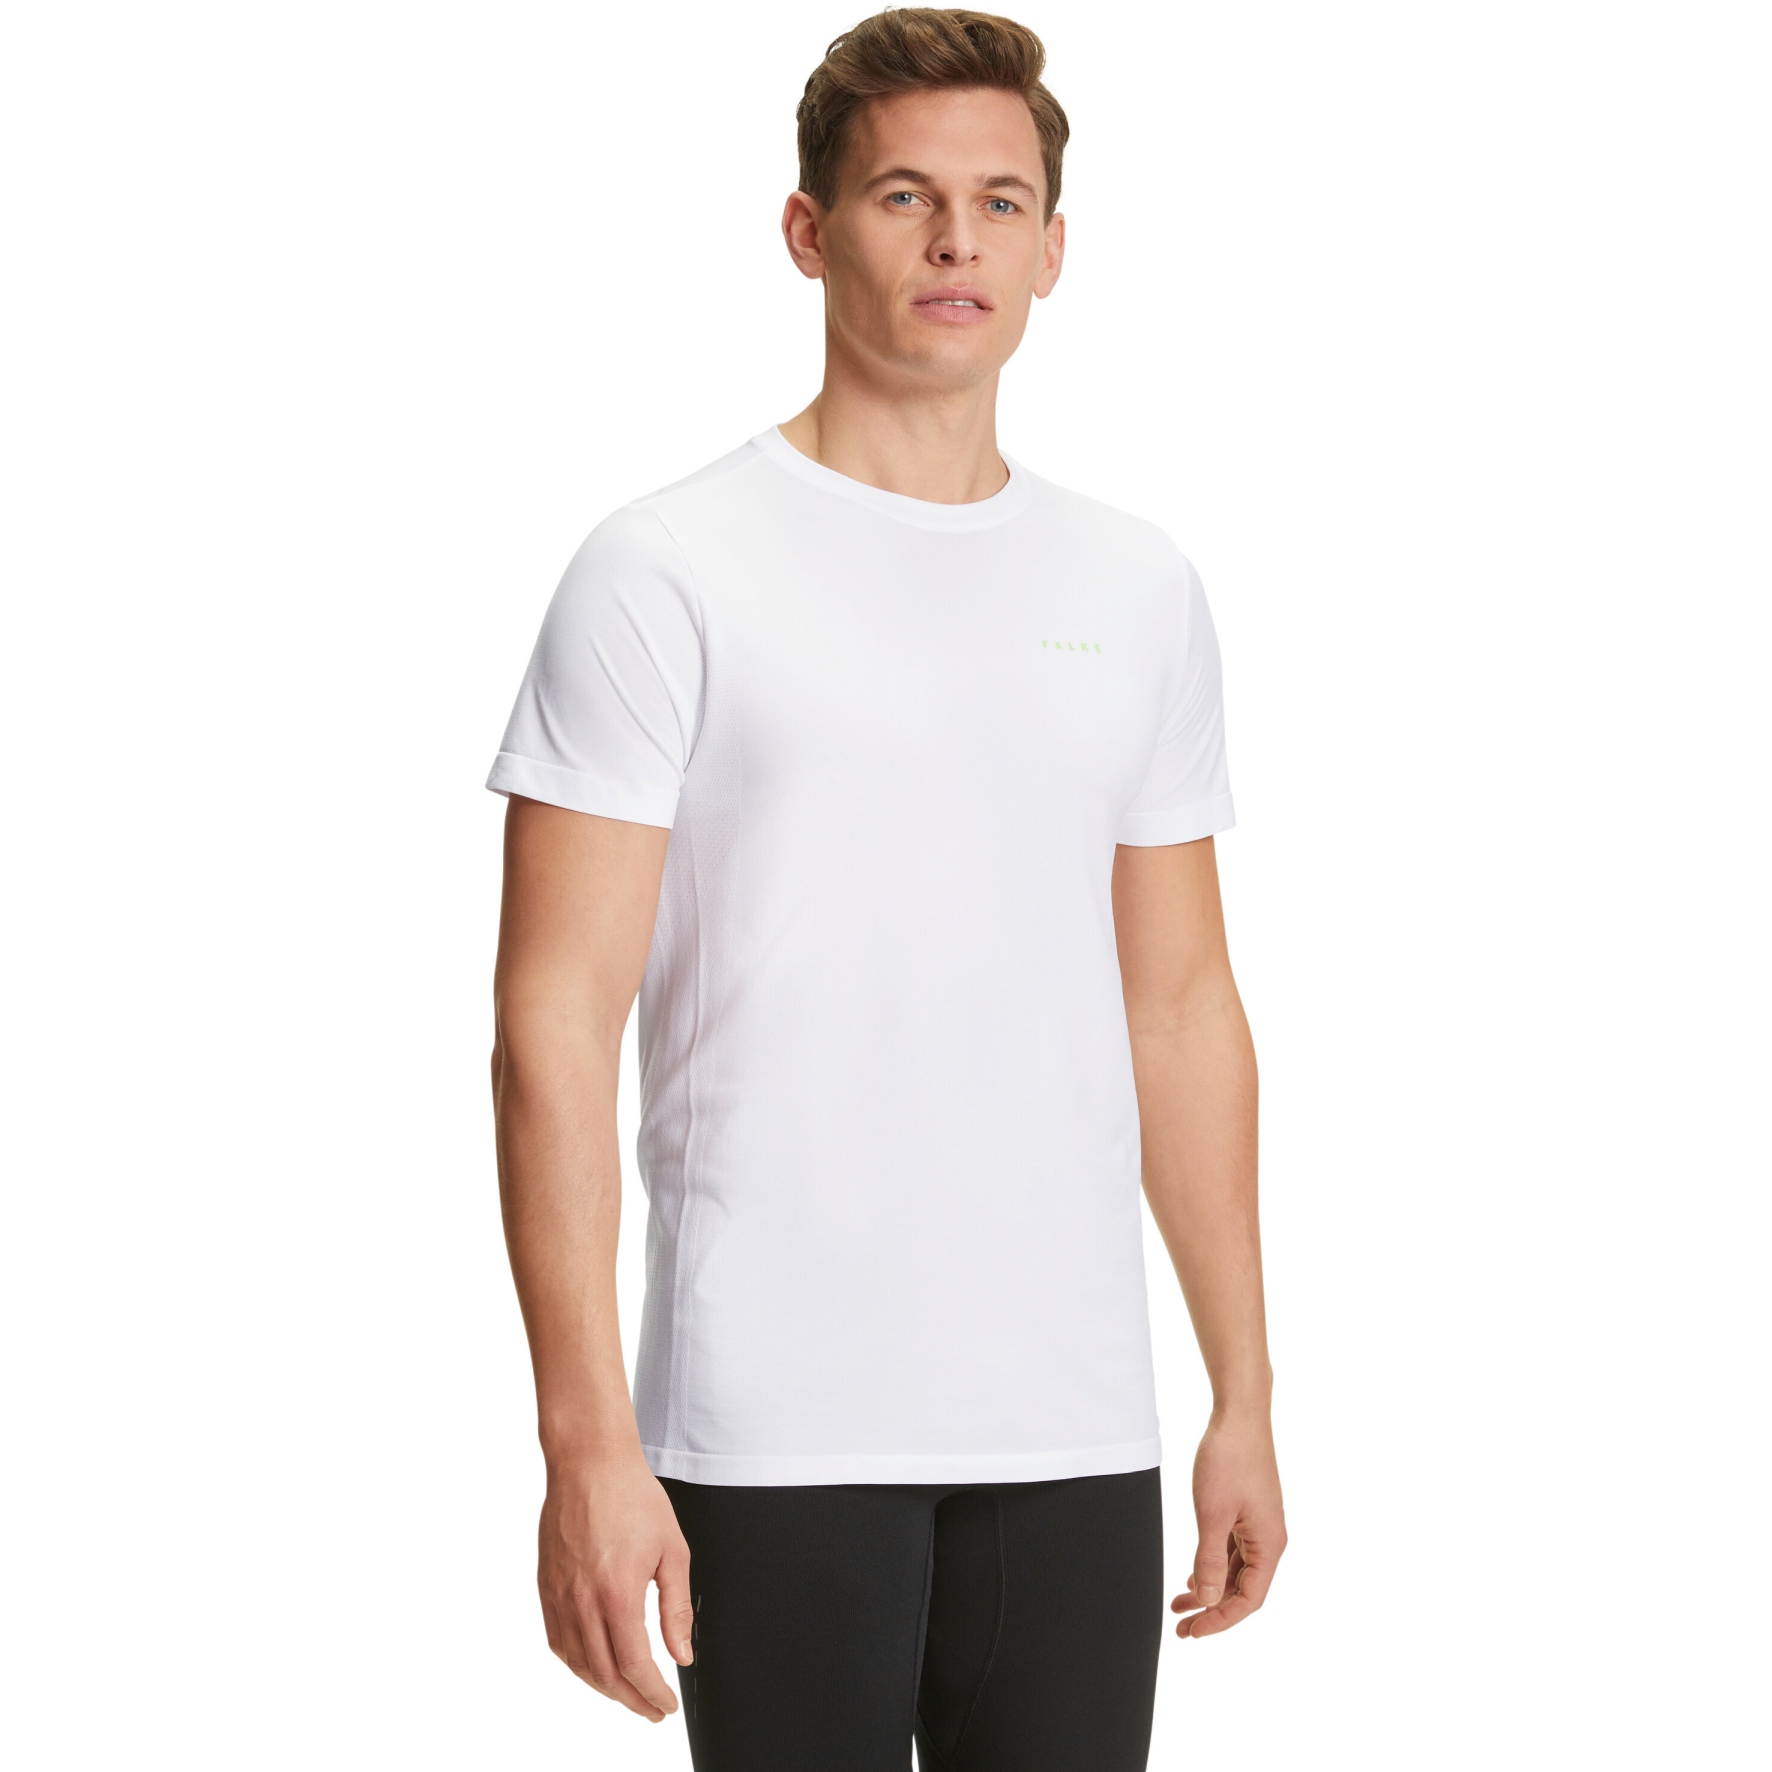 Produktbild von Falke RU T-Shirt 2 - weiß 2860